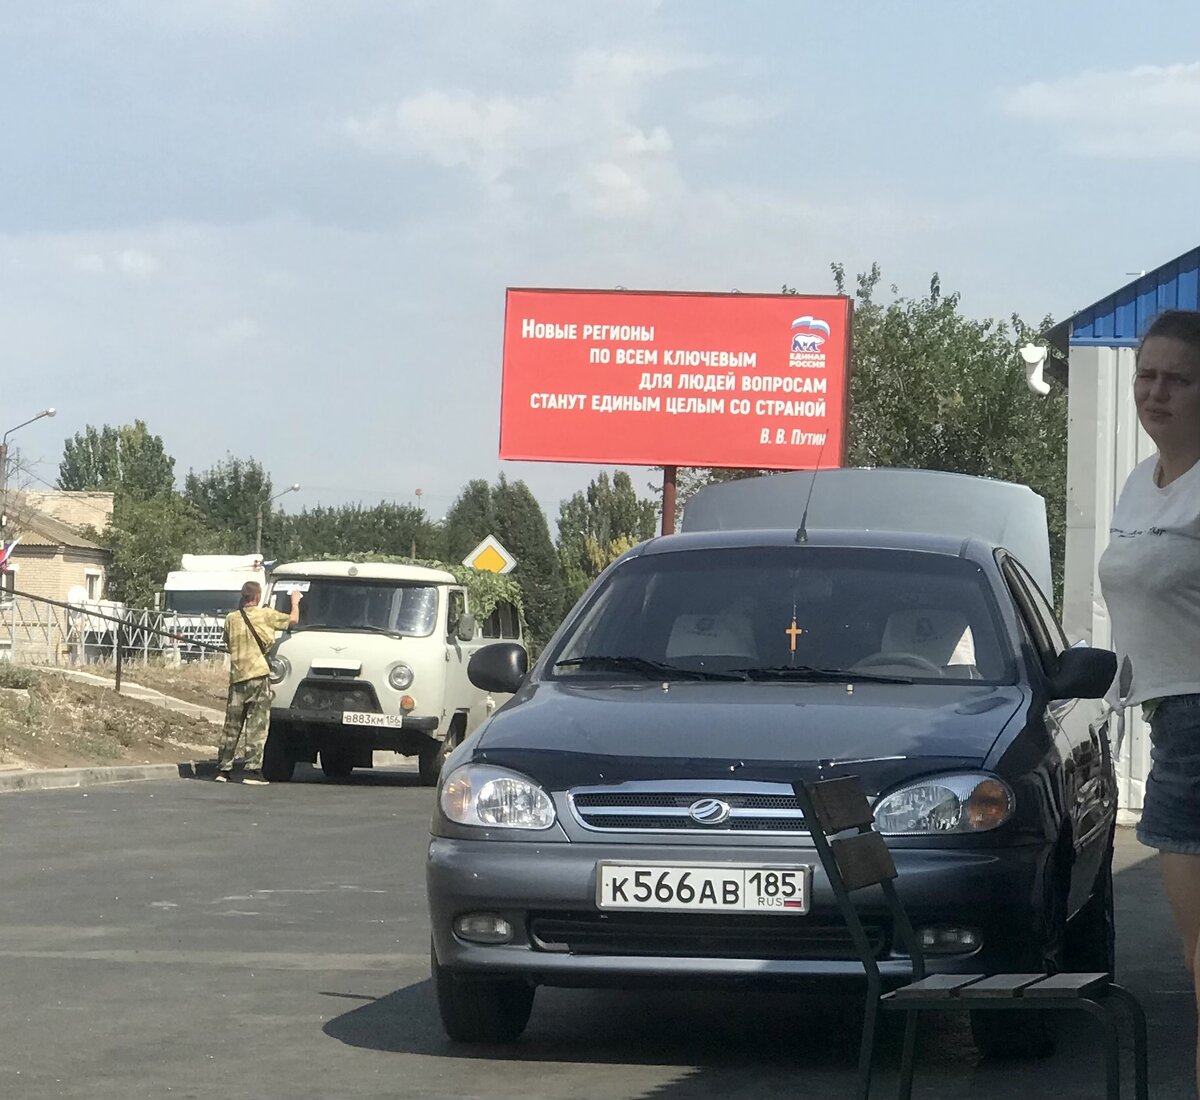 Совсем недавно навигатор стал выдавать новый маршрут-через Мариуполь. Простояв перед Крымским мостом почти 4 часа в прошлый раз, решили ехать так. Из Москвы. Страшно не было. Это моя страна!